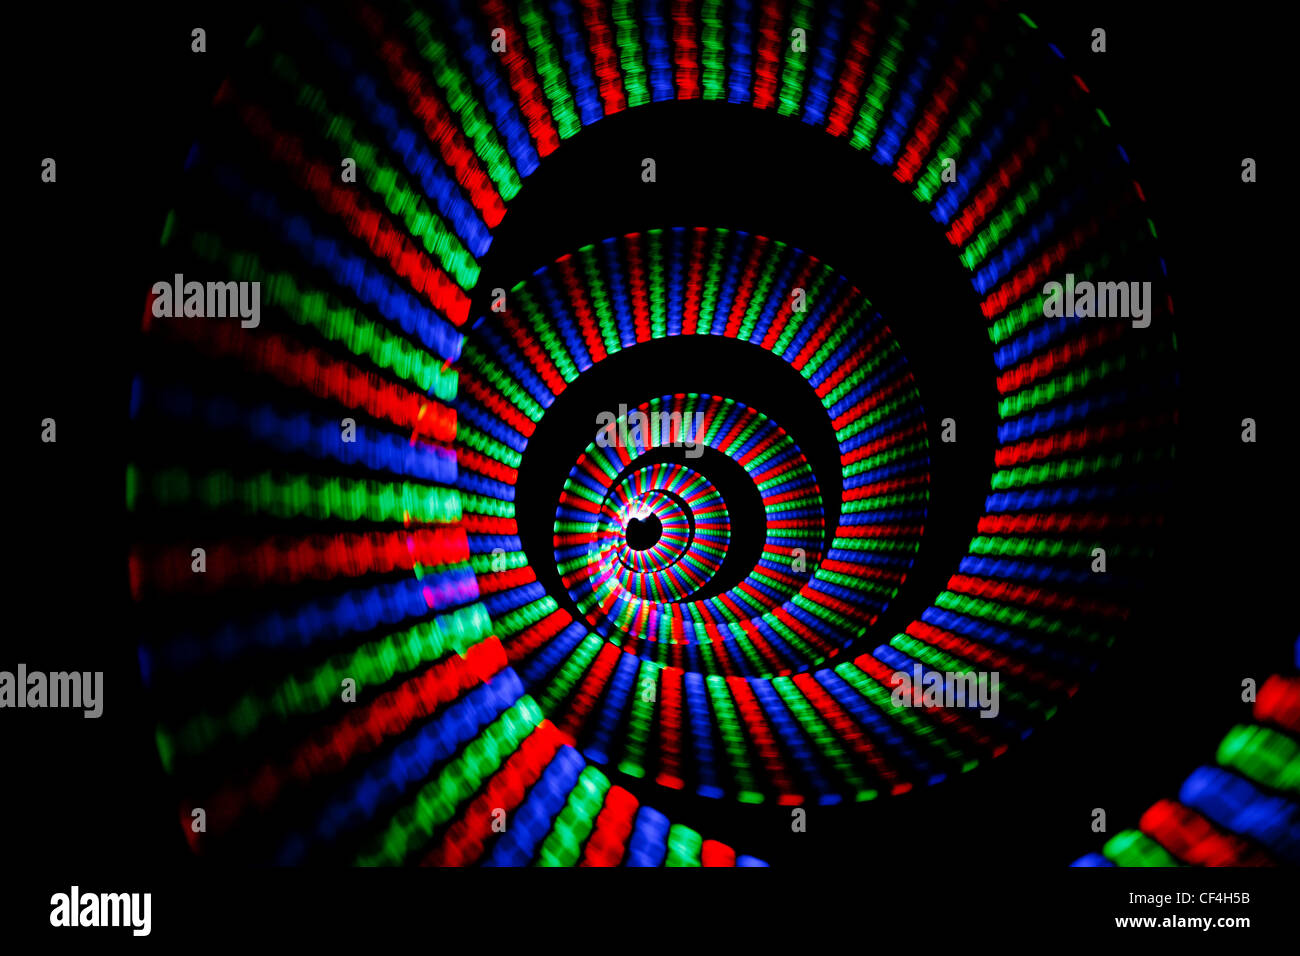 Leuchtende Farben des Regenbogens trail in Form einer Spirale auf schwarzem Hintergrund. Isoliert. Stockfoto